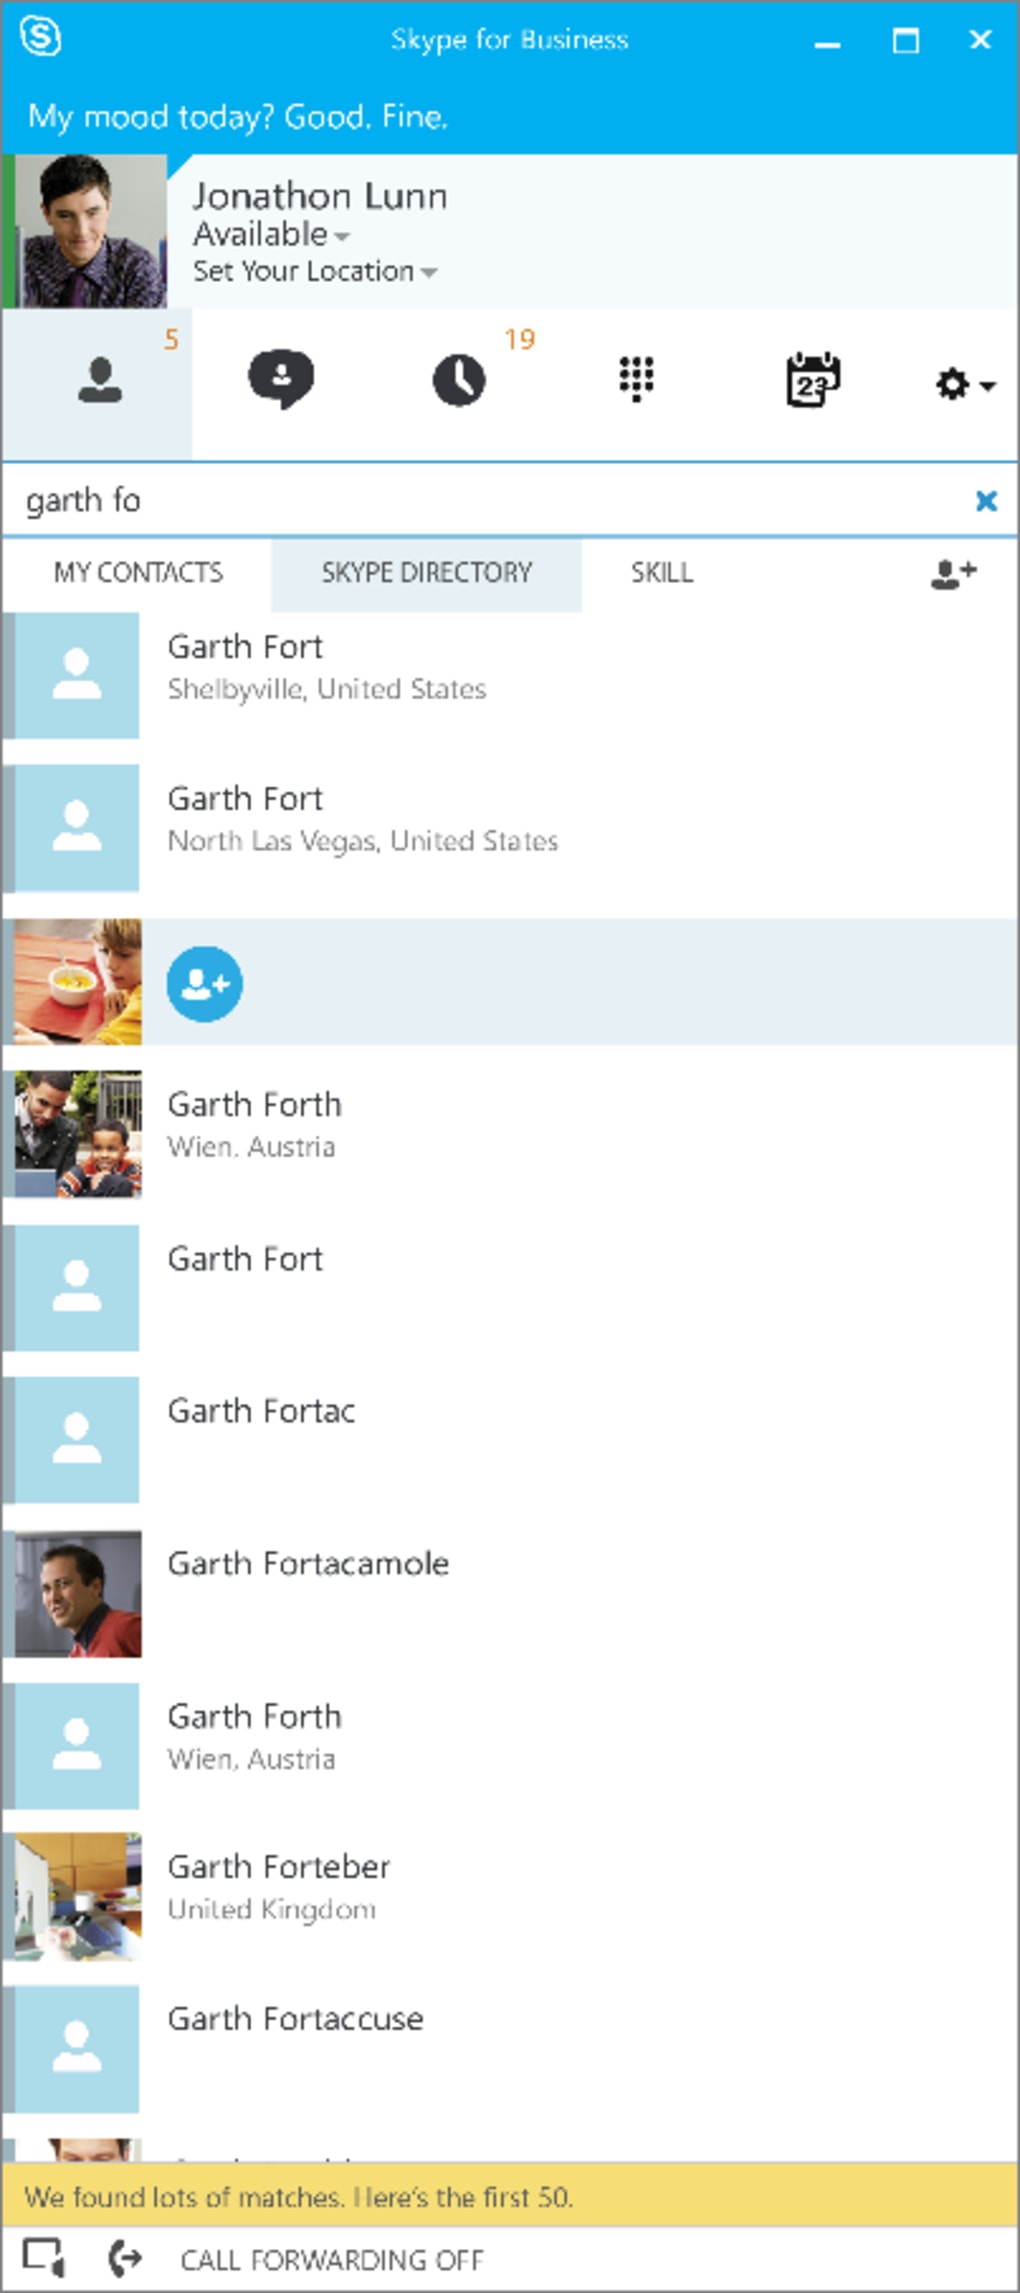 Scarica Skype for Business 16.0.4849.1000 per Windows - Filehippo.com